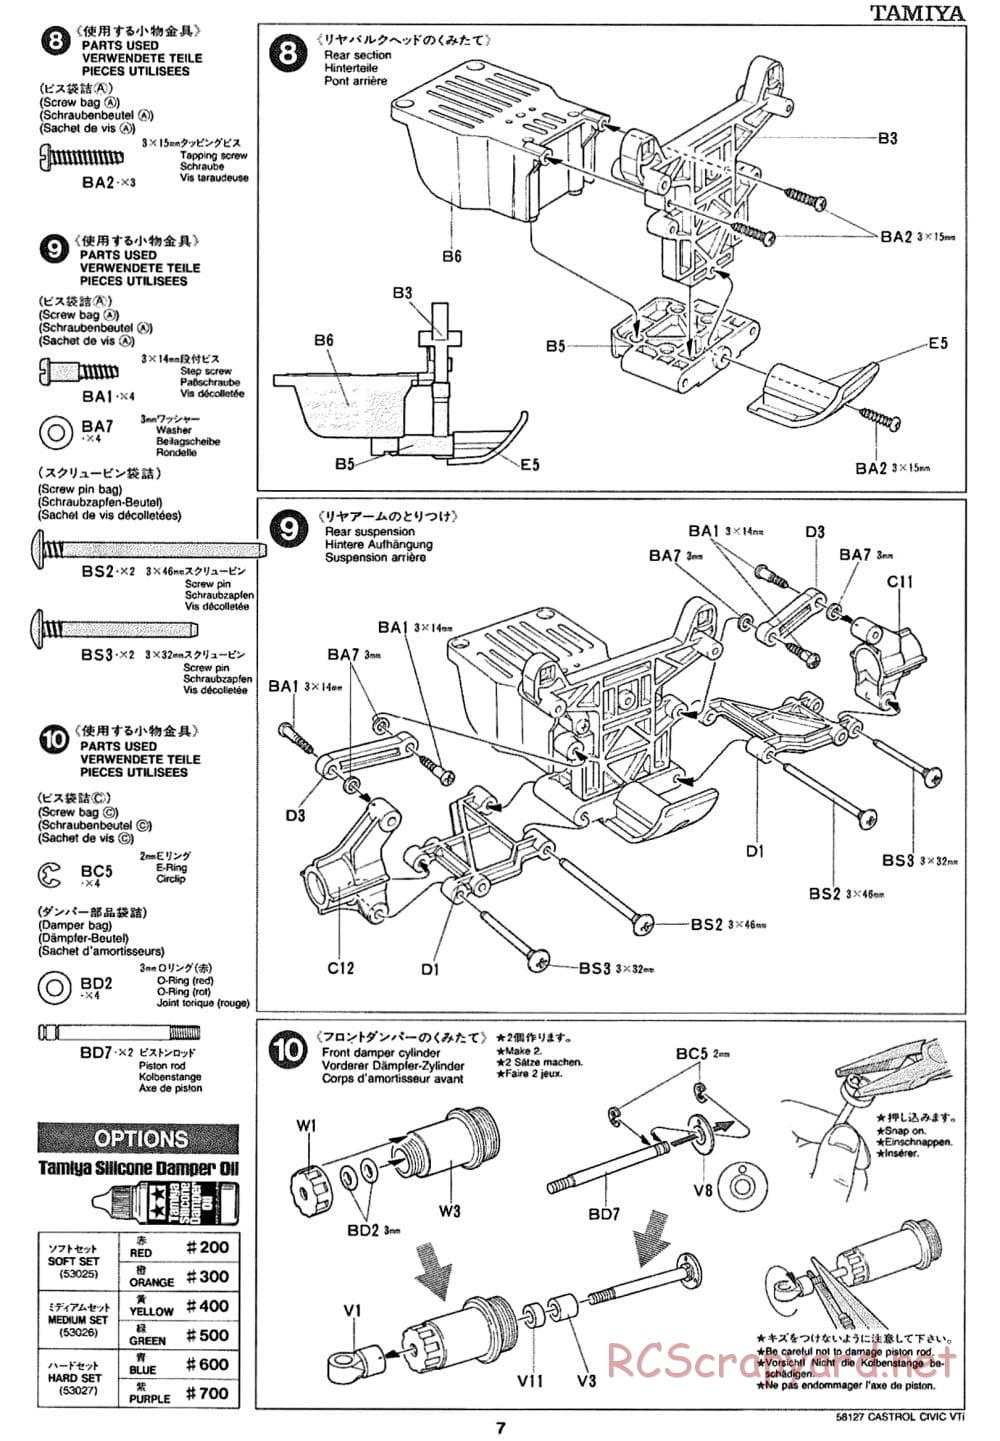 Tamiya - Castrol Honda Civic VTi - FF-01 Chassis - Manual - Page 7